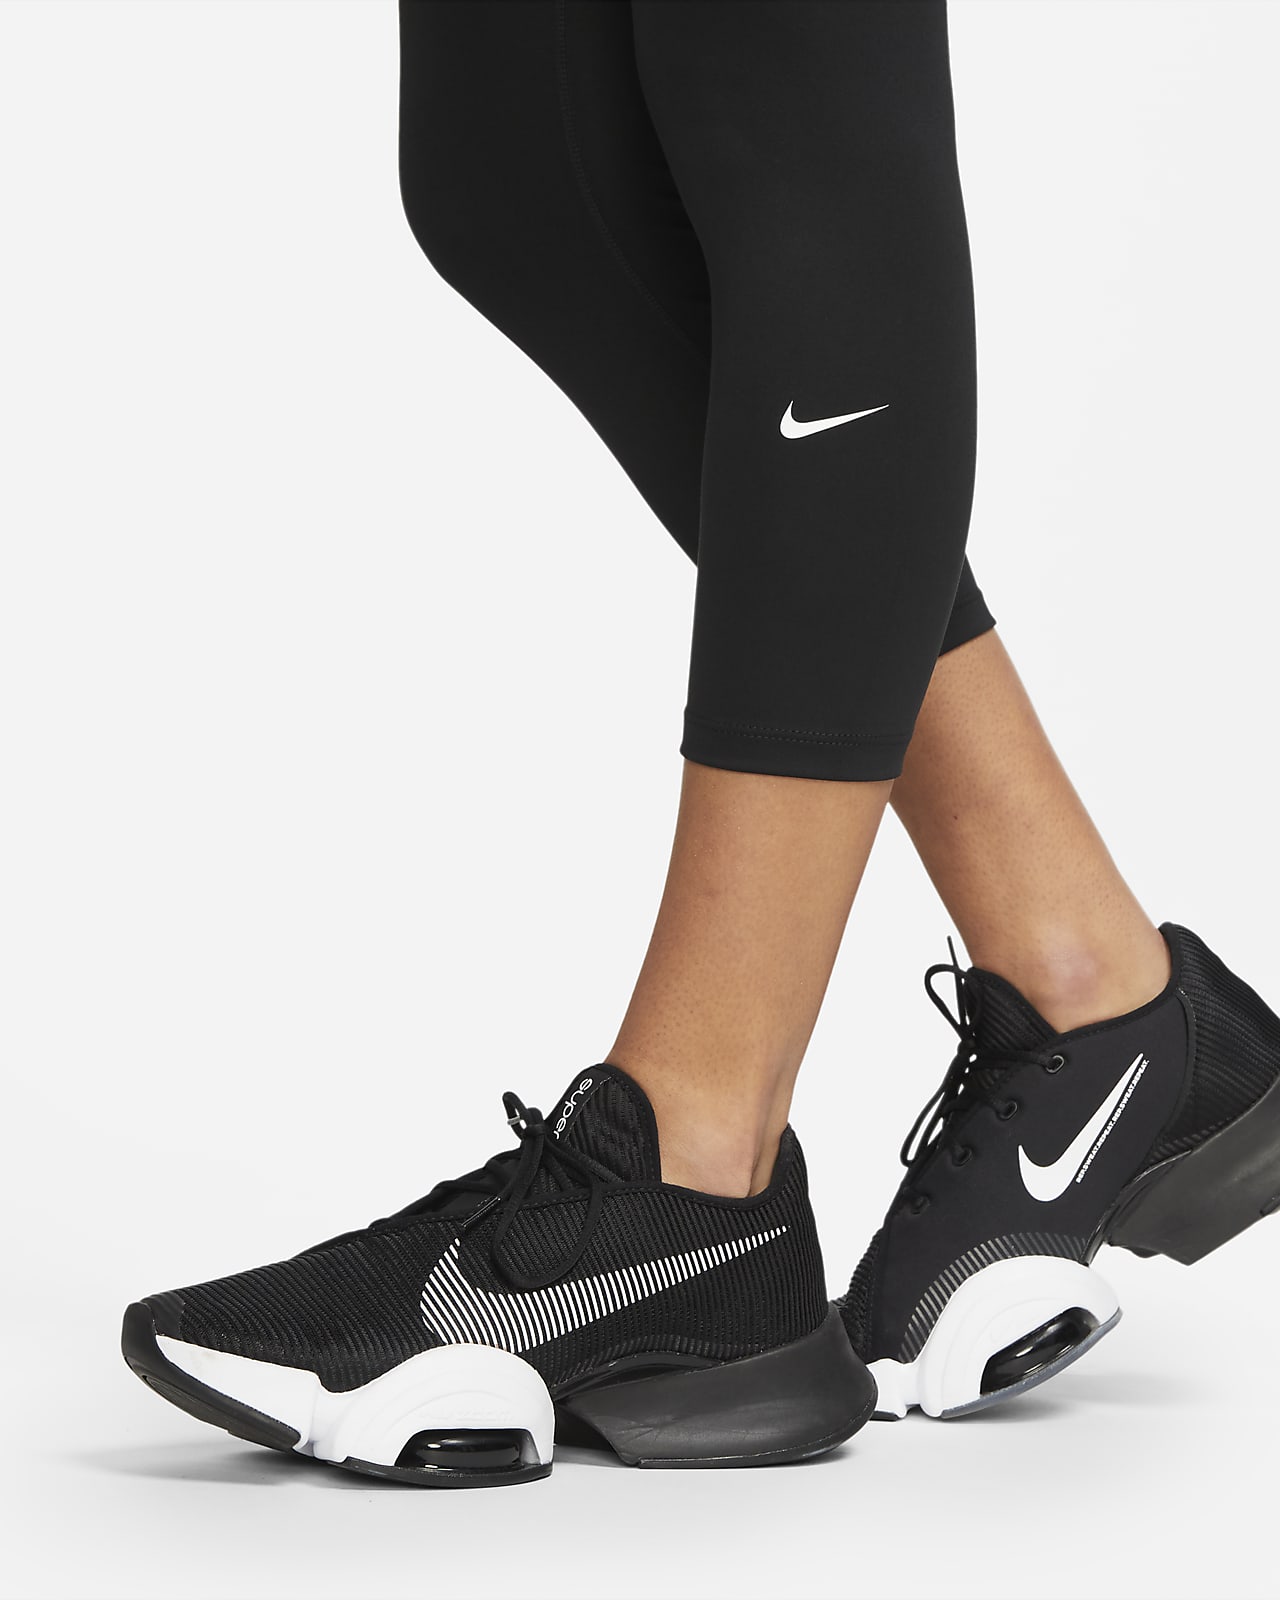 Legging corsaire taille haute Nike One pour femme